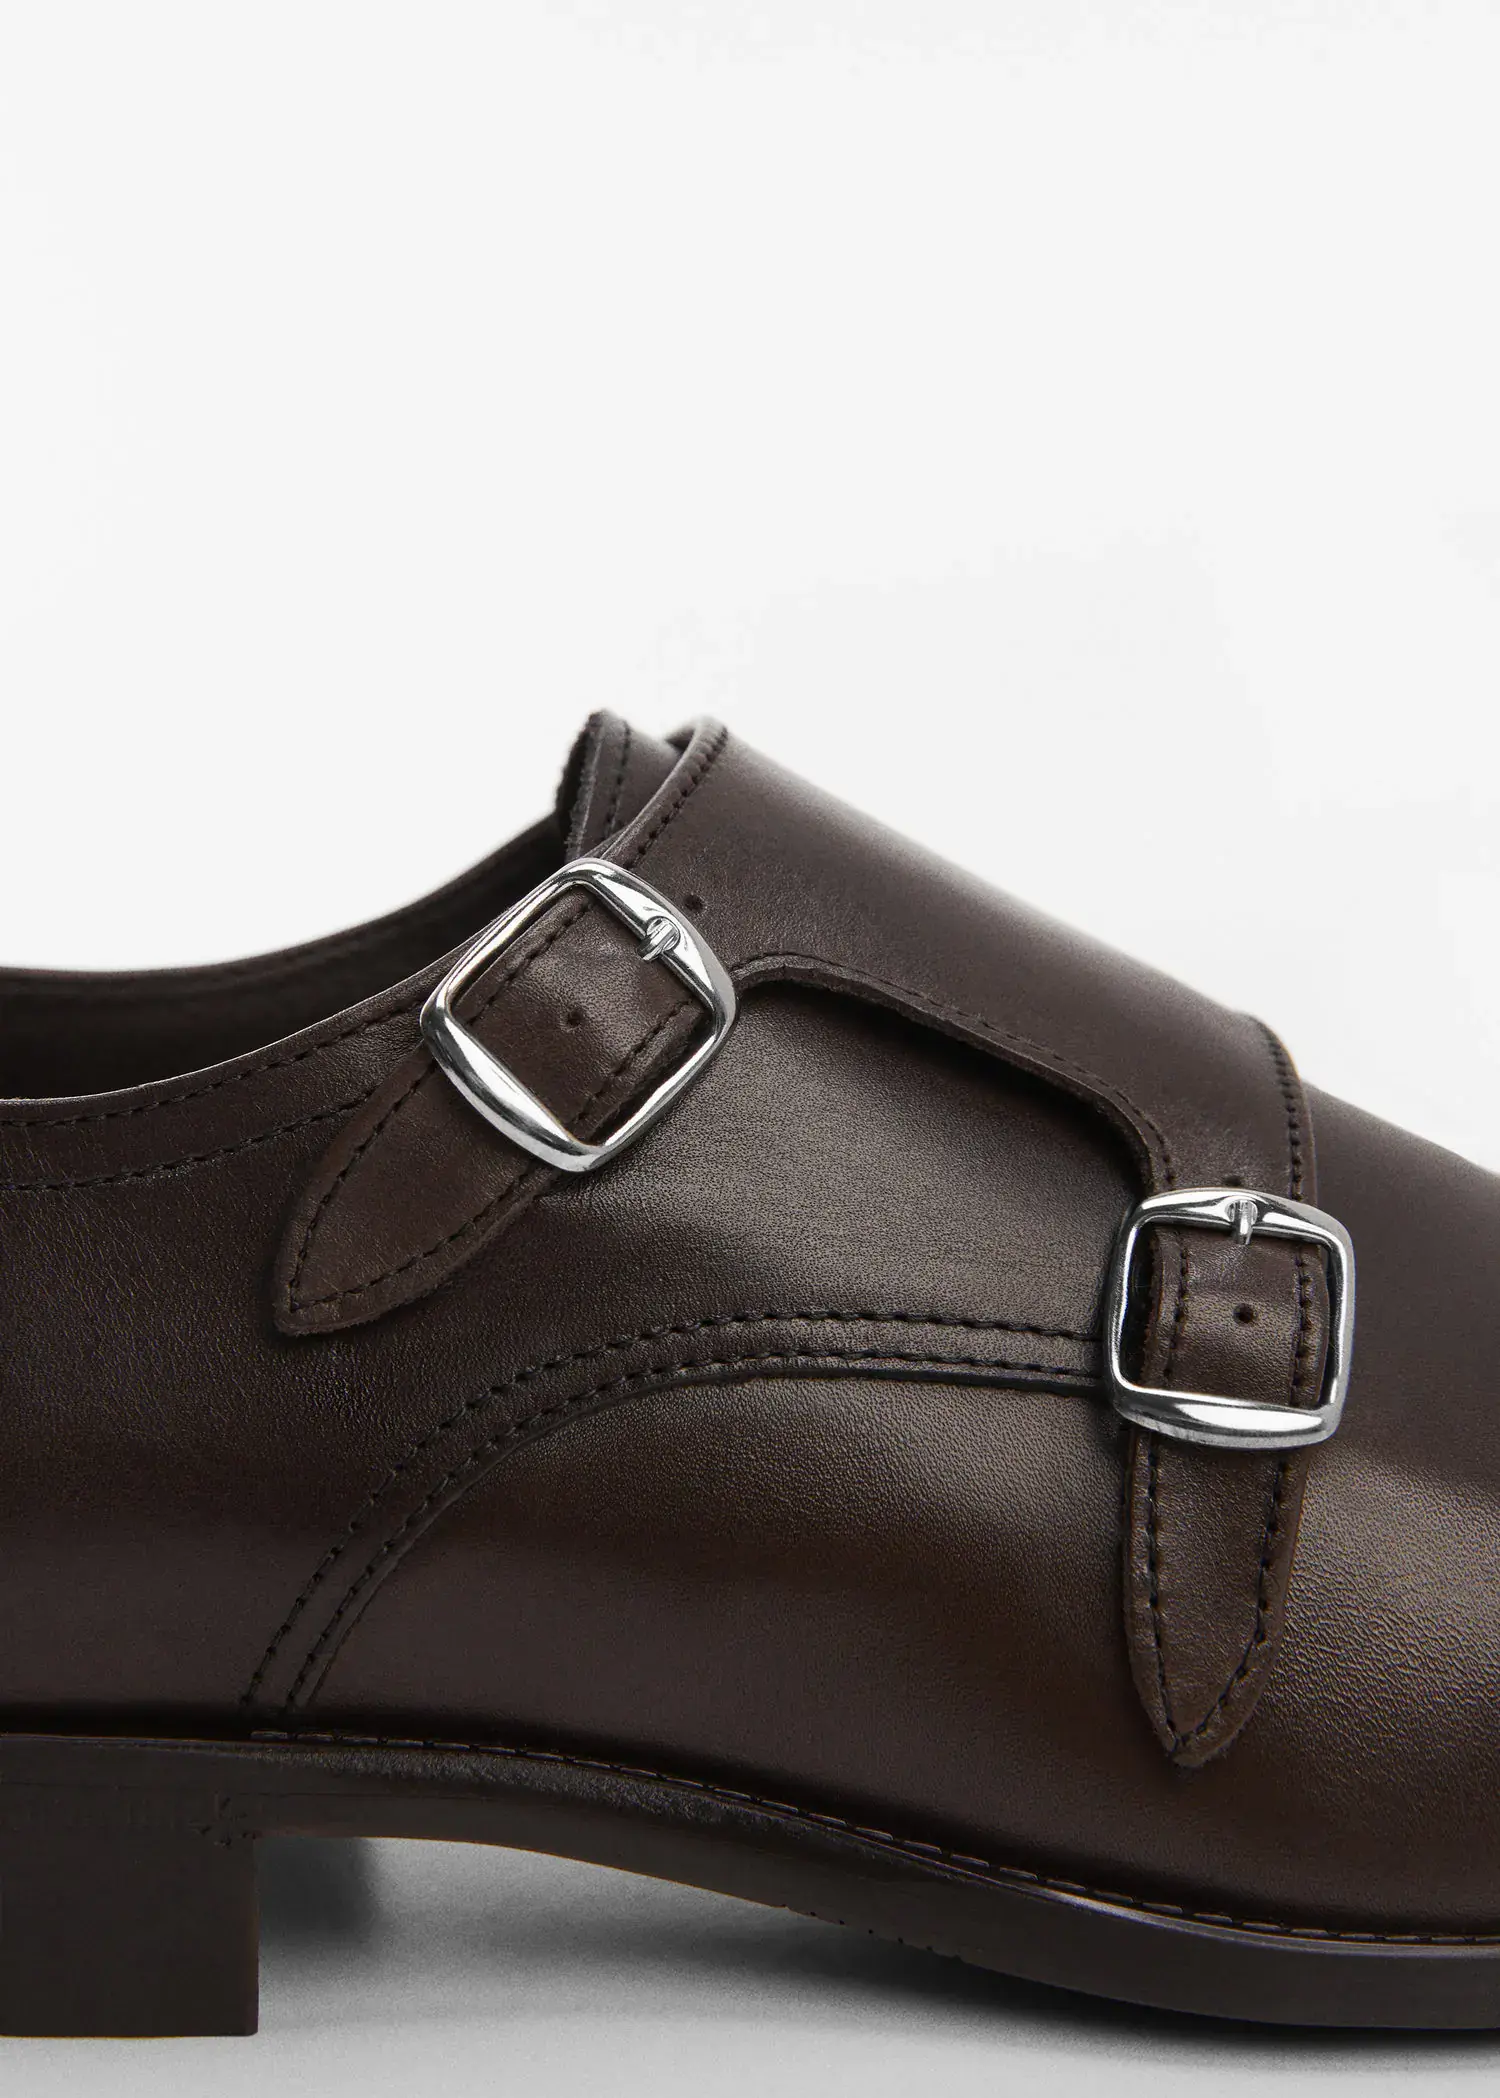 Mango Leather suit shoes. 3